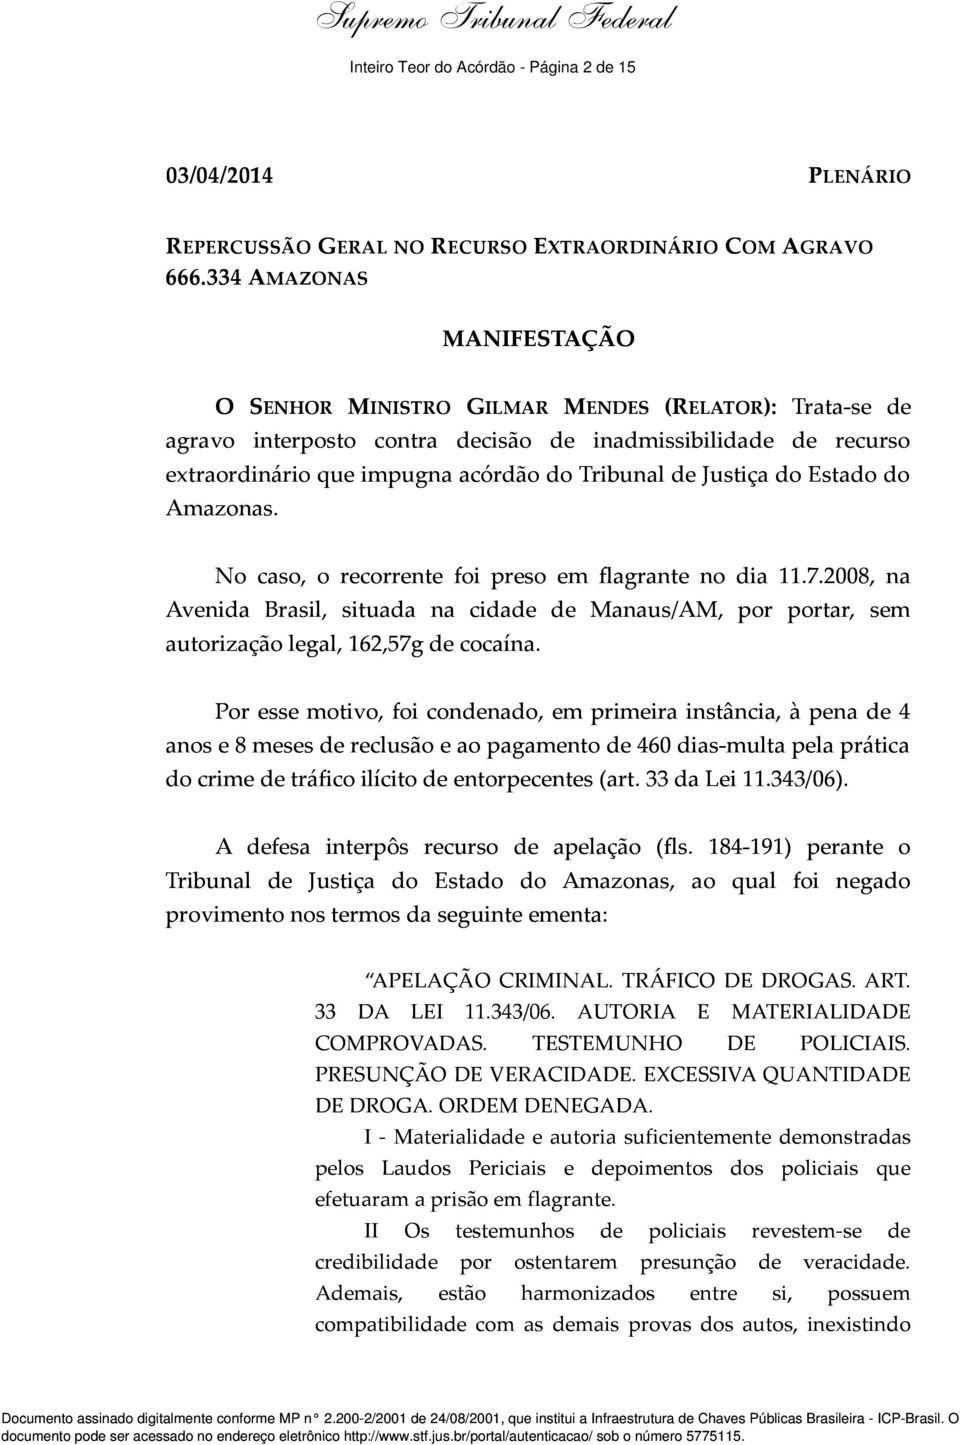 Justiça do Estado do Amazonas. No caso, o recorrente foi preso em flagrante no dia 11.7.2008, na Avenida Brasil, situada na cidade de Manaus/AM, por portar, sem autorização legal, 162,57g de cocaína.